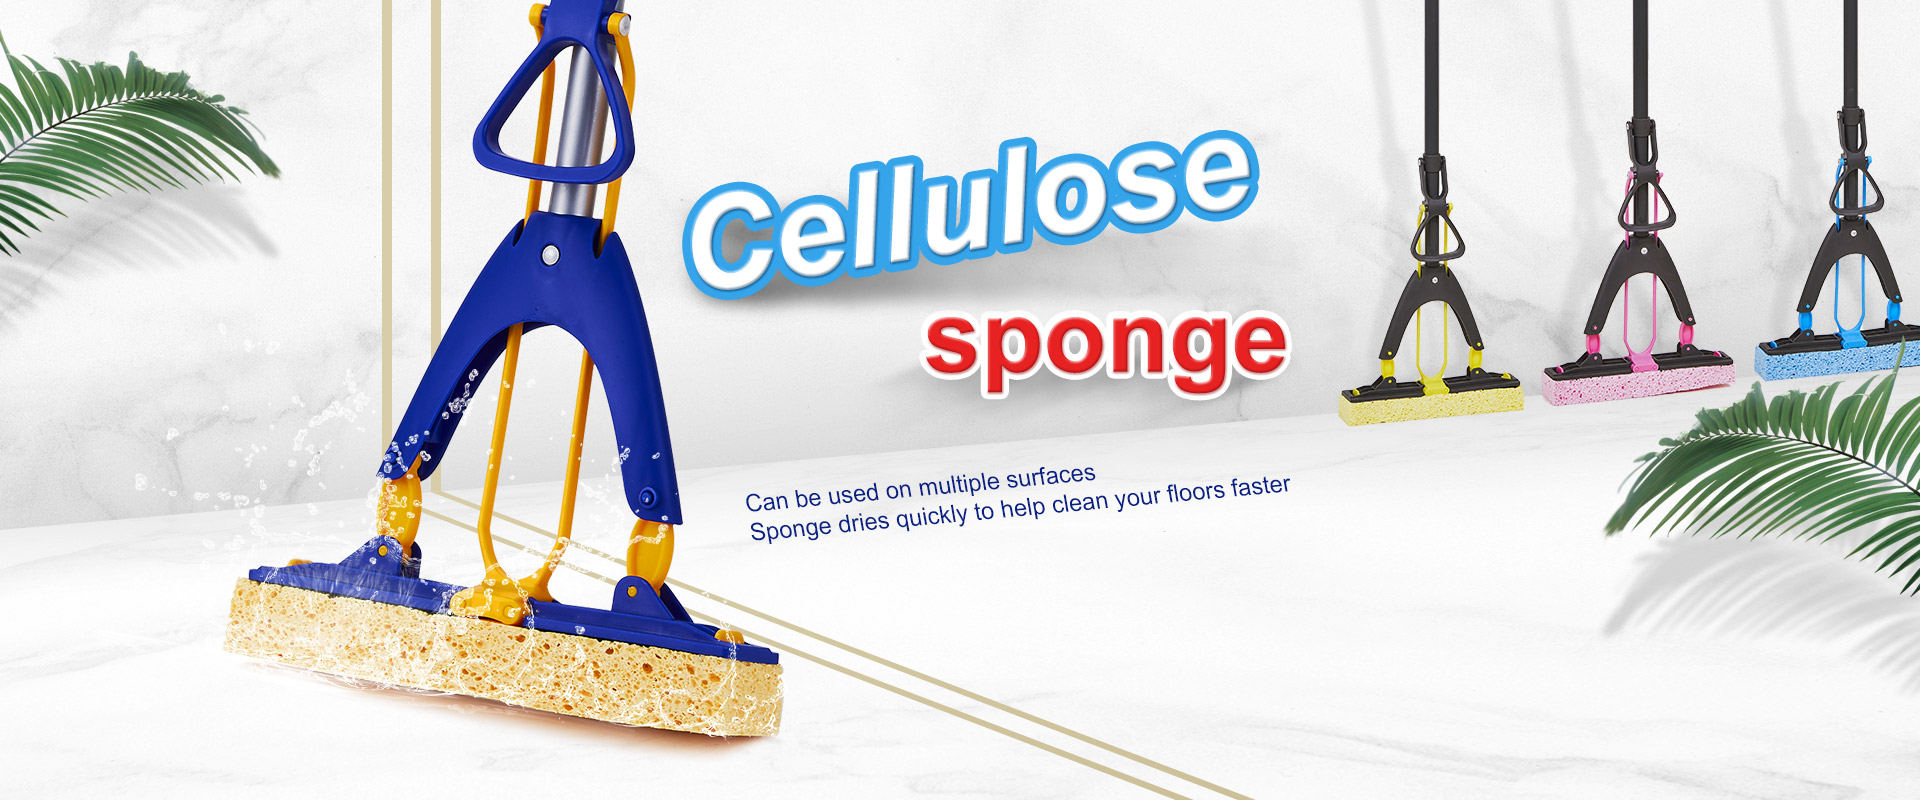 selulusa sponge